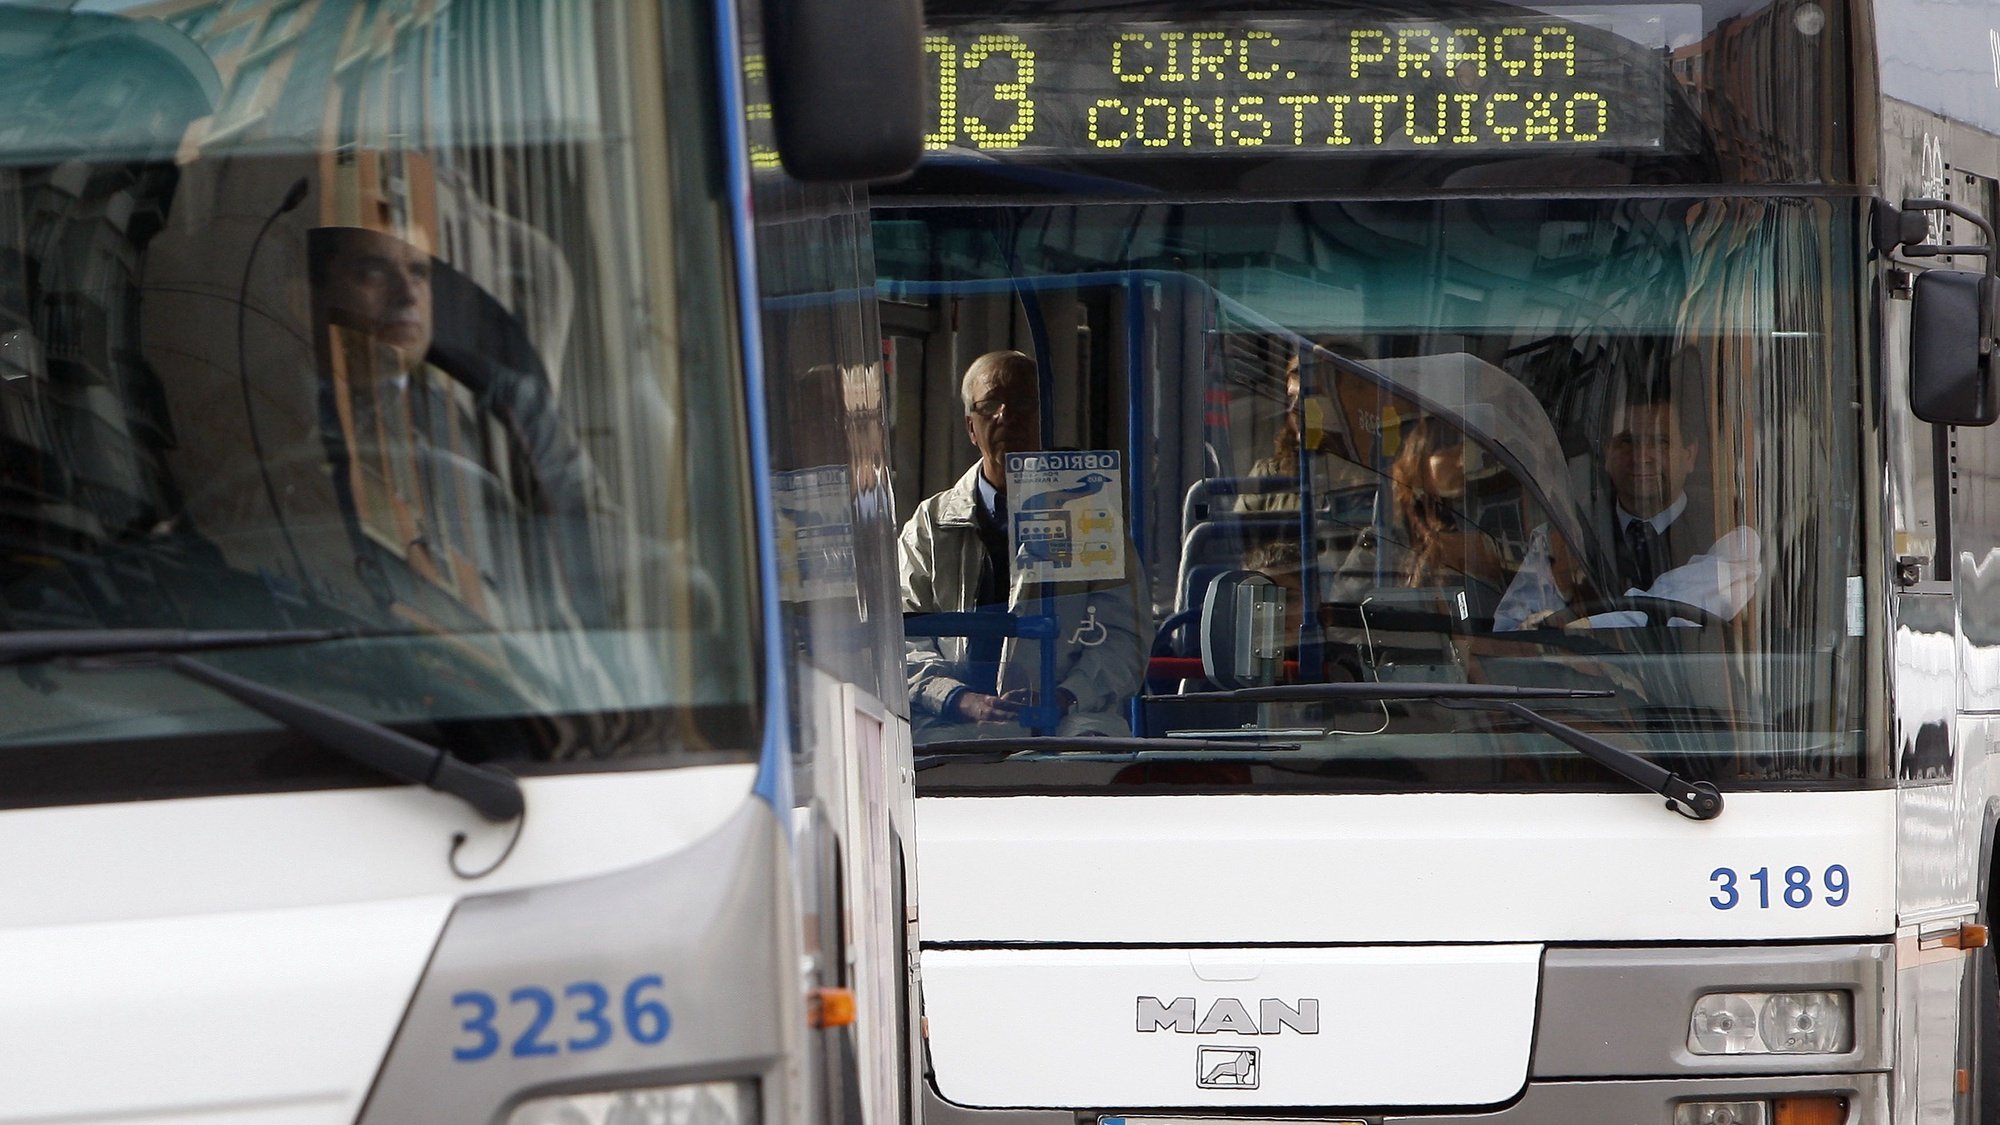 Dois autocarros da STCP (Sociedade de Transportes Colectivos do Porto), no Porto, 16 de novembro de 2011.  JOSE COELHO/LUSA